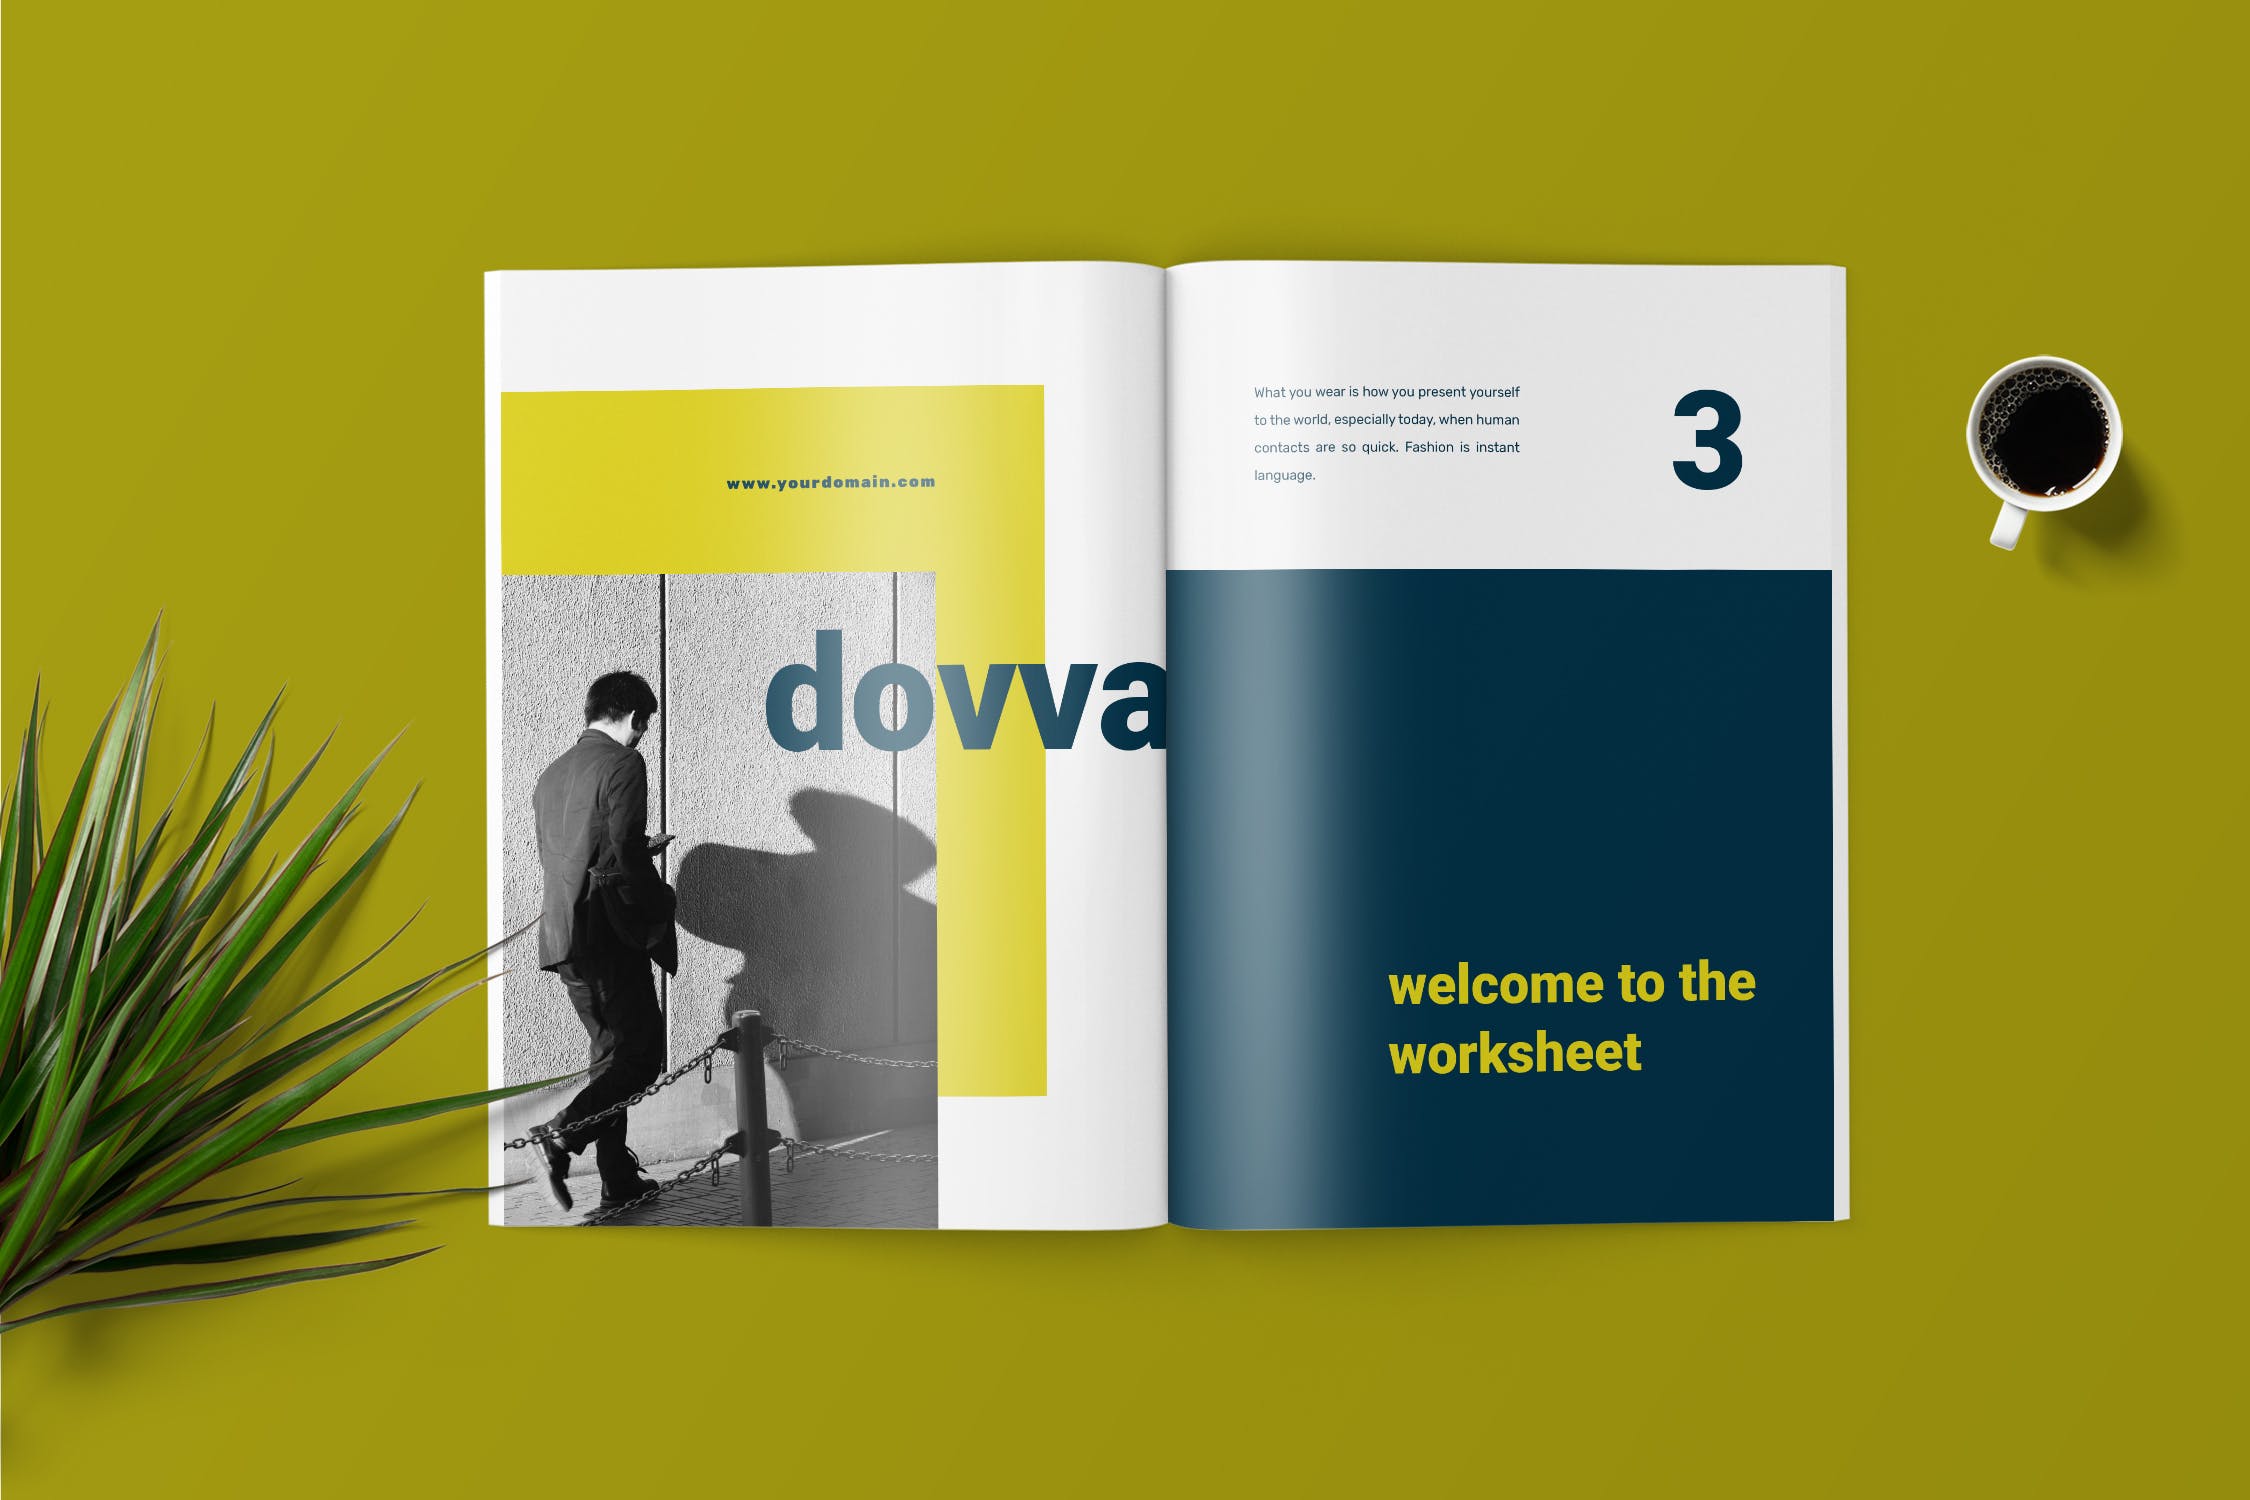 极简主义Workbook创意设计模板v1 Dovva – Minimalist Workbook Template插图(2)